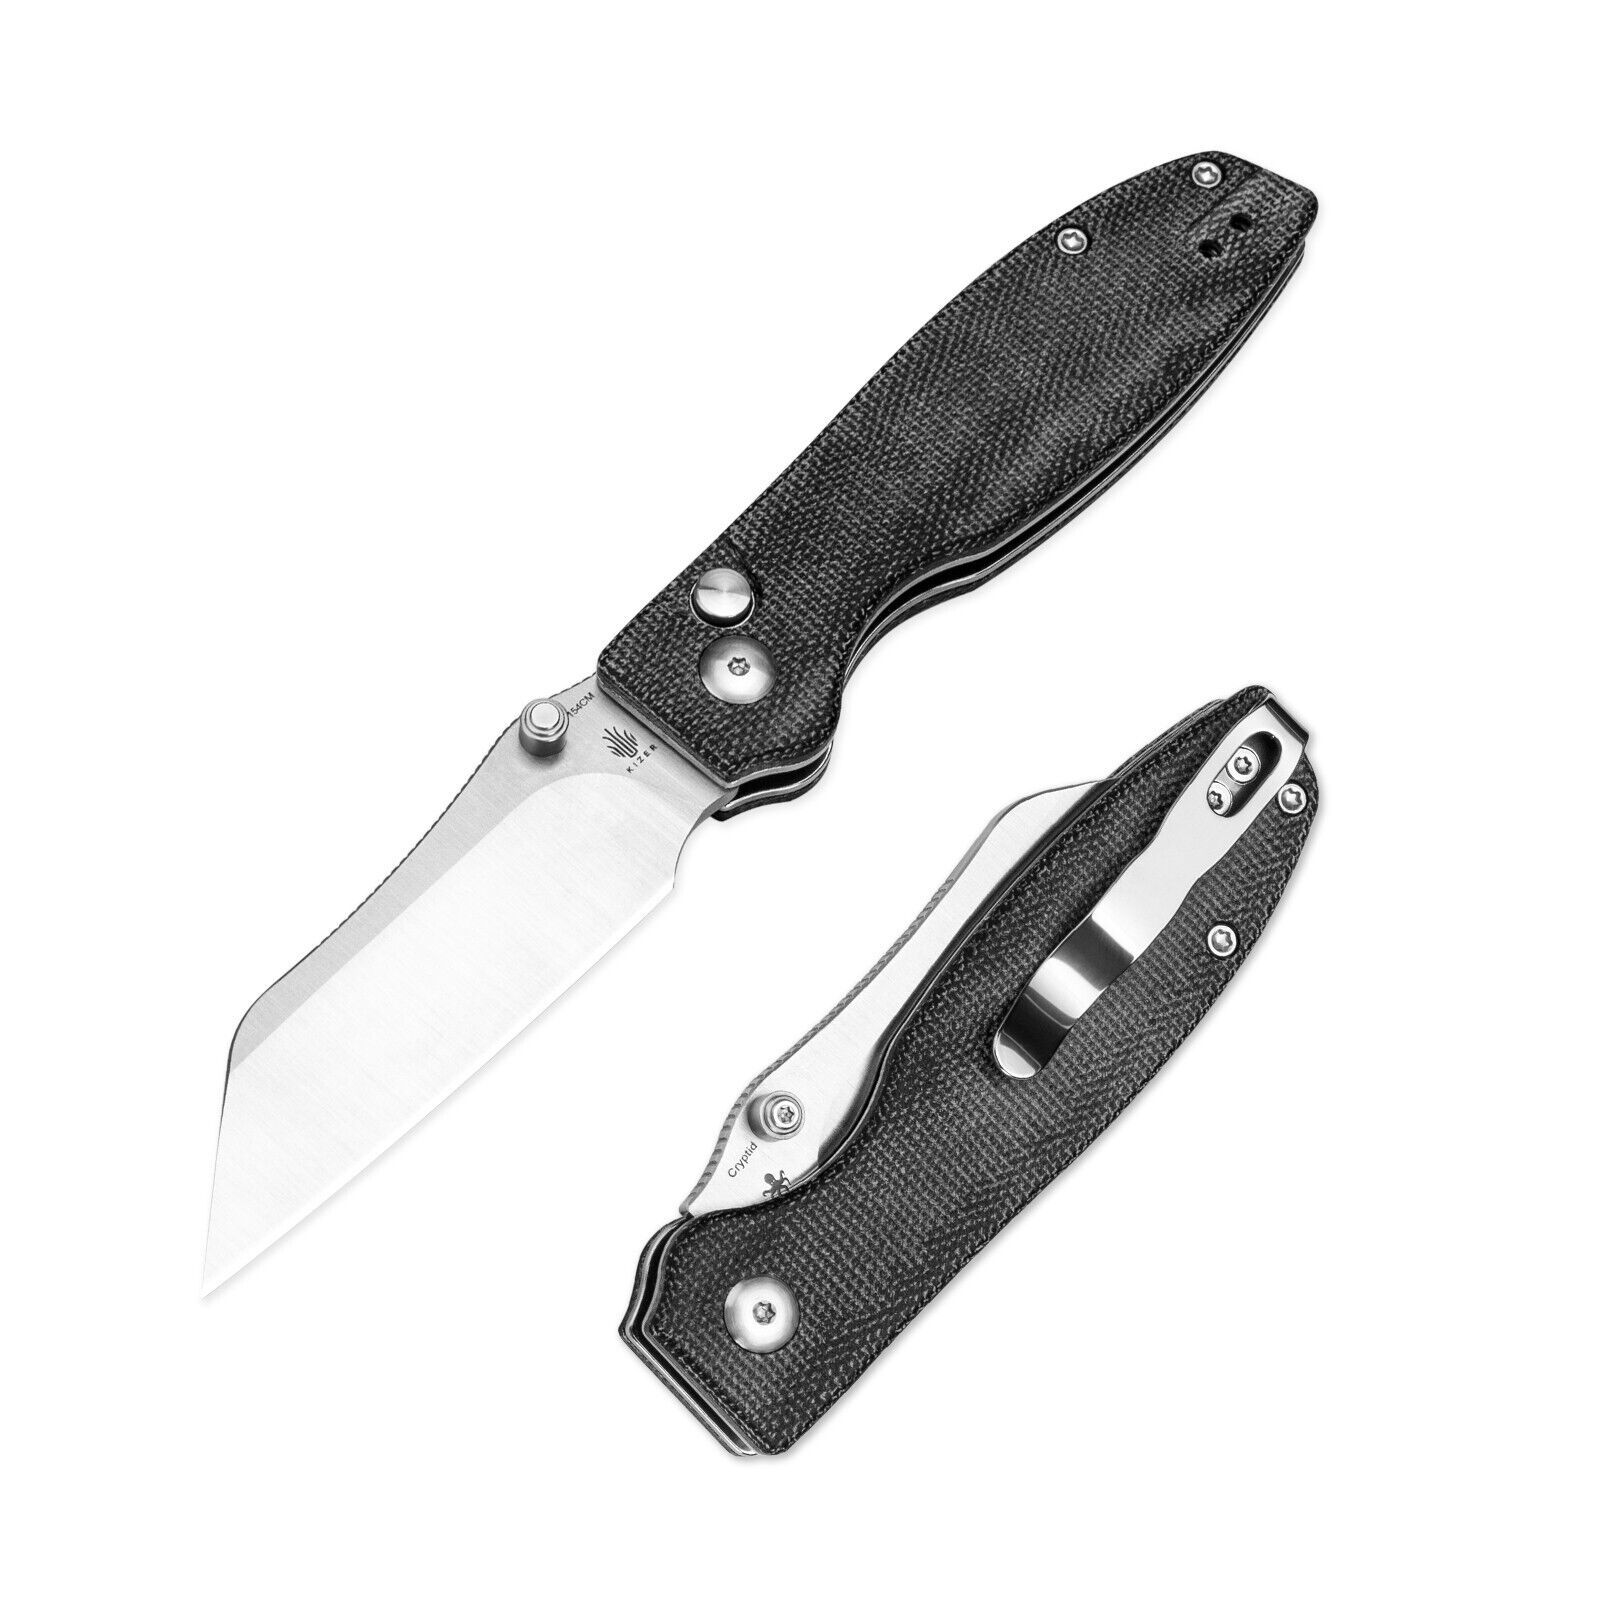 Kizer Pocket Knife Cryptid 154CM Blade Micarta Handle V3657C1